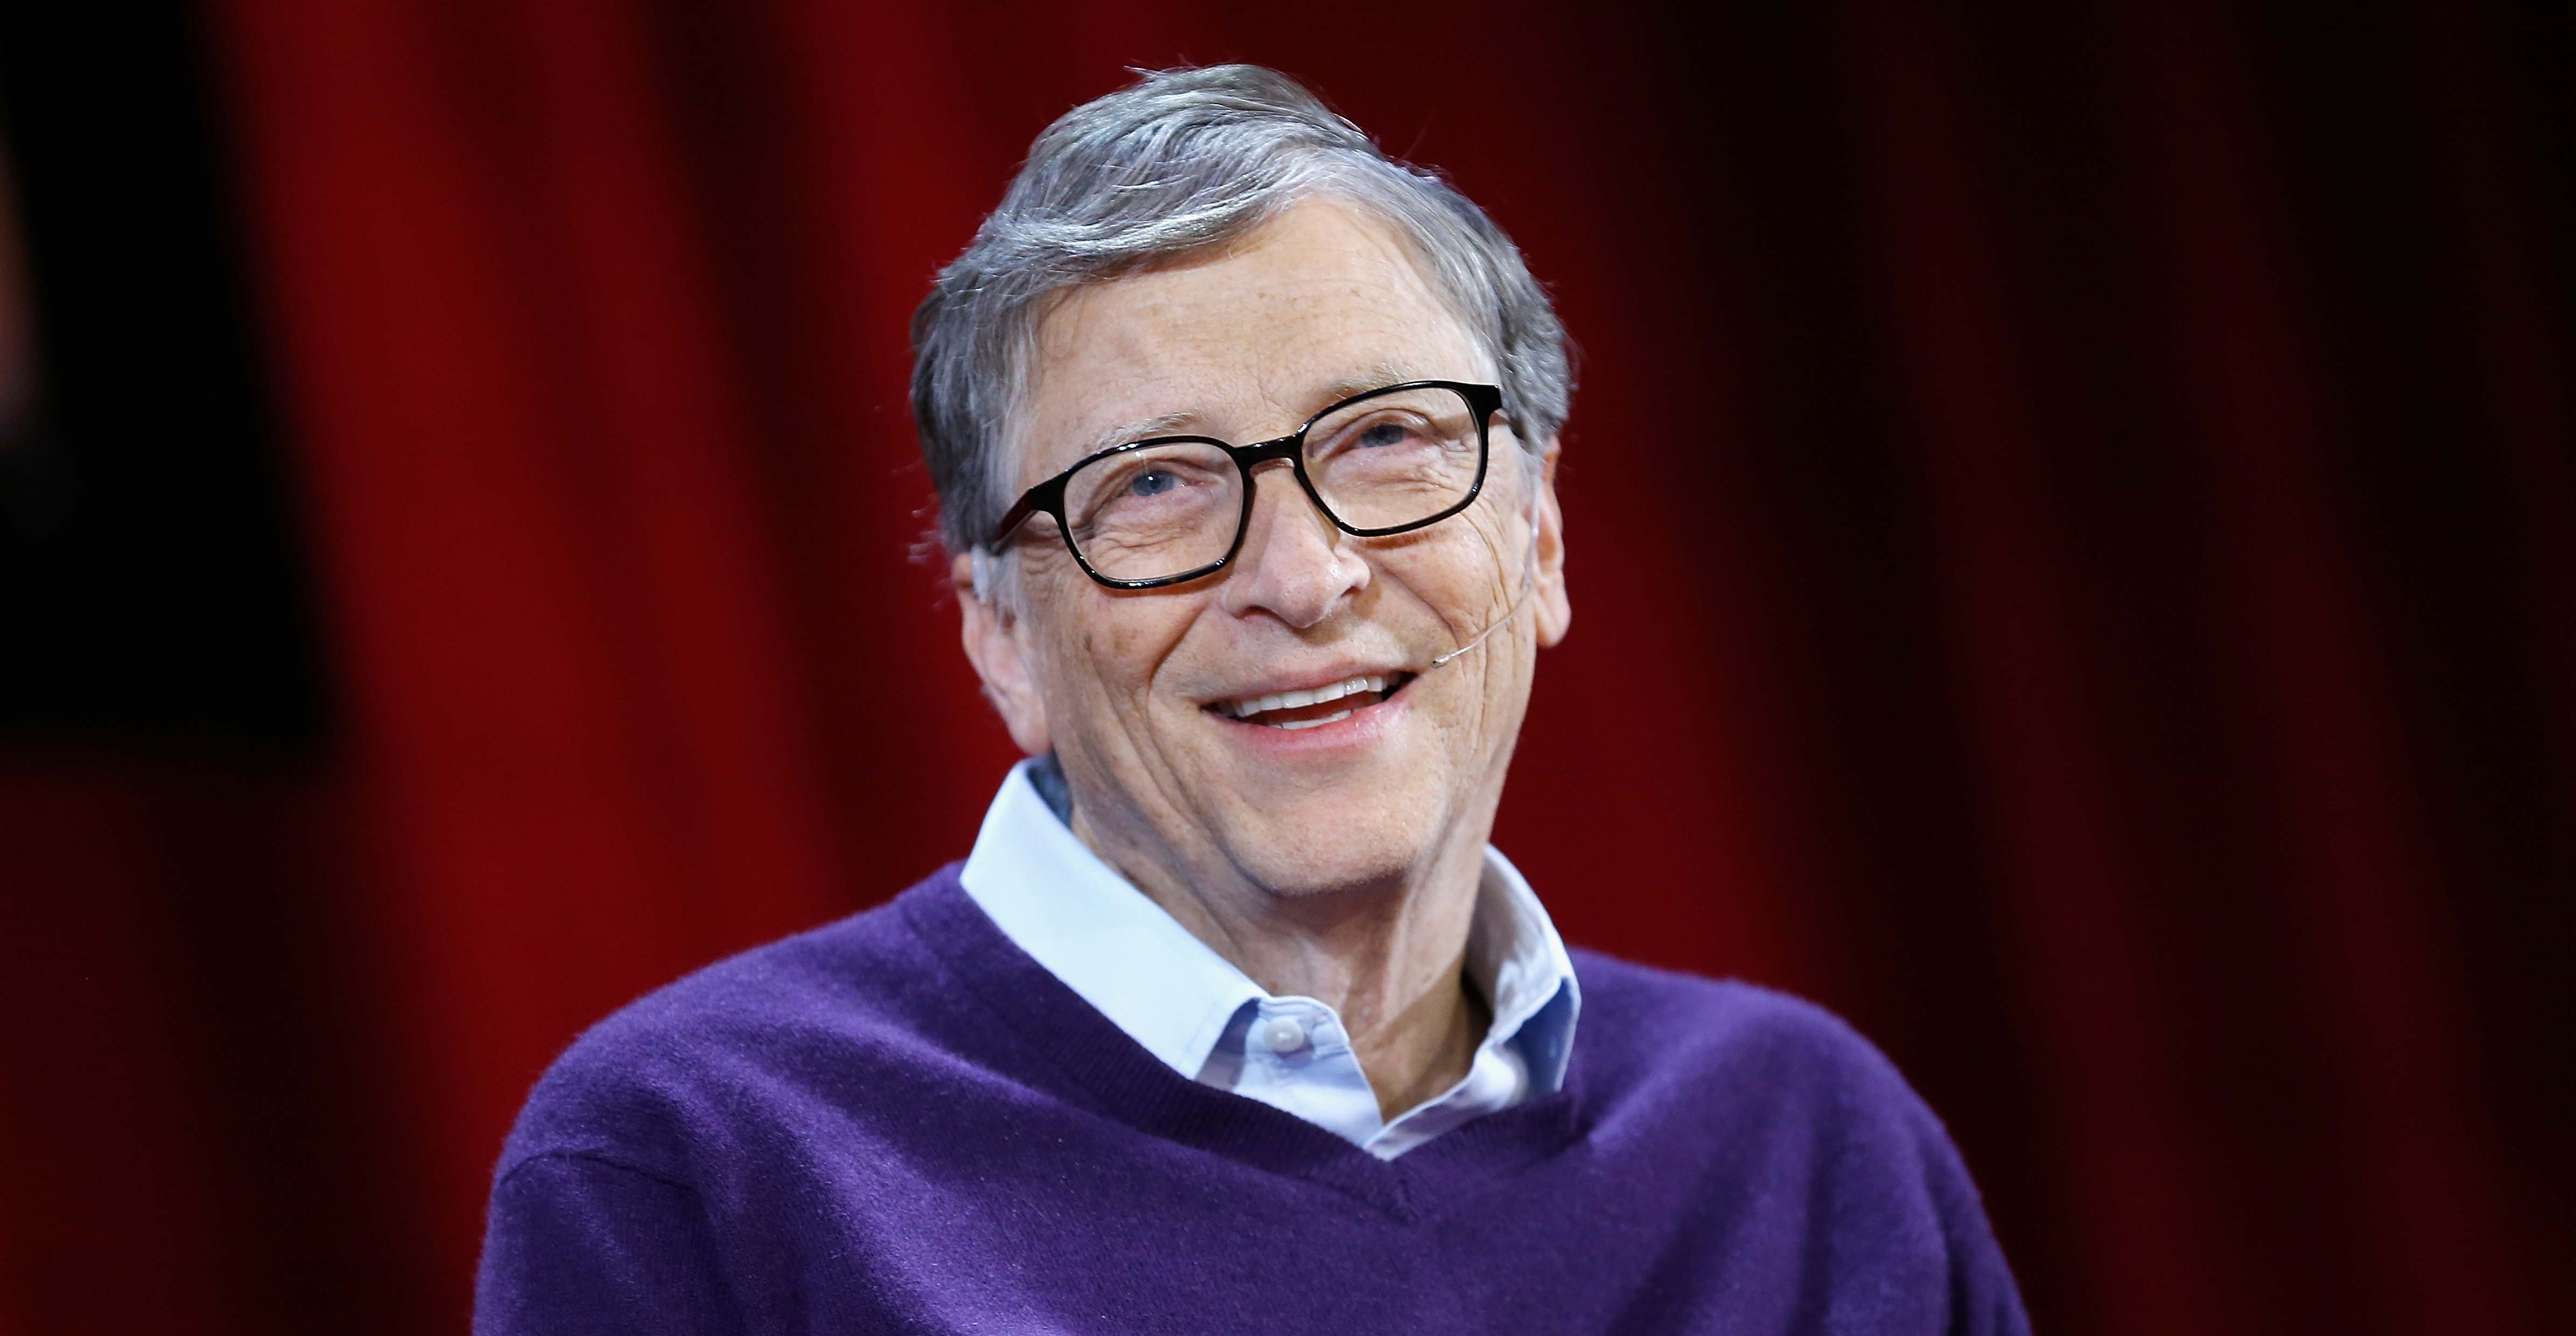 Bill Gates aparecerá en un episodio de ‘The Big Bang Theory’